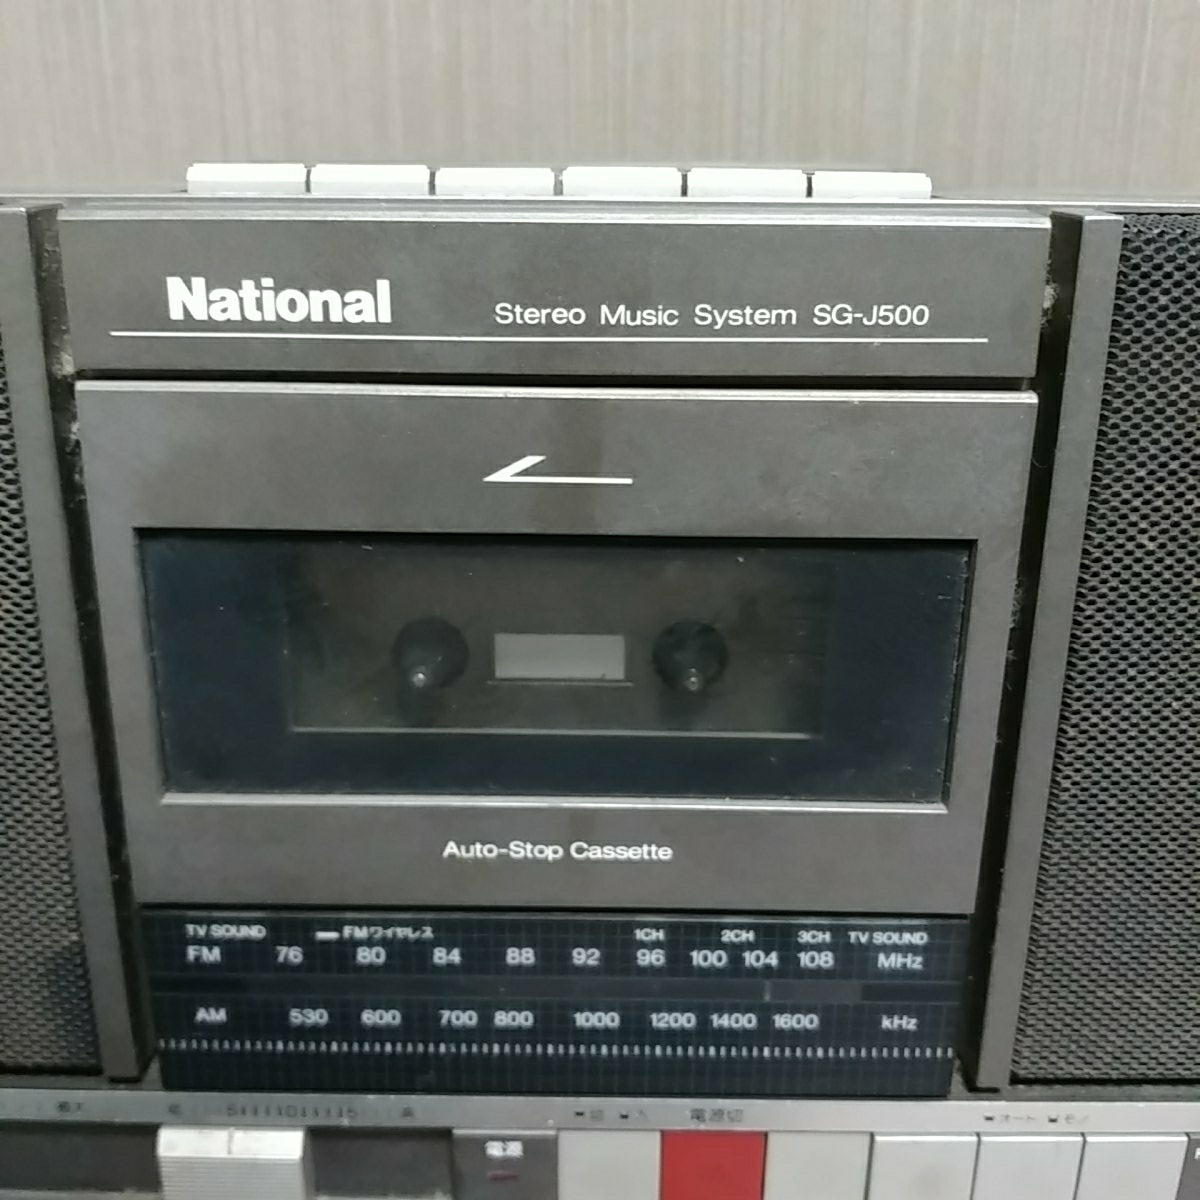 錄音機全國國家SG-J500垃圾錄音機 原文:ラジカセ　レコードプレーヤー付　ナショナル　National　SG-J500　ジャンク